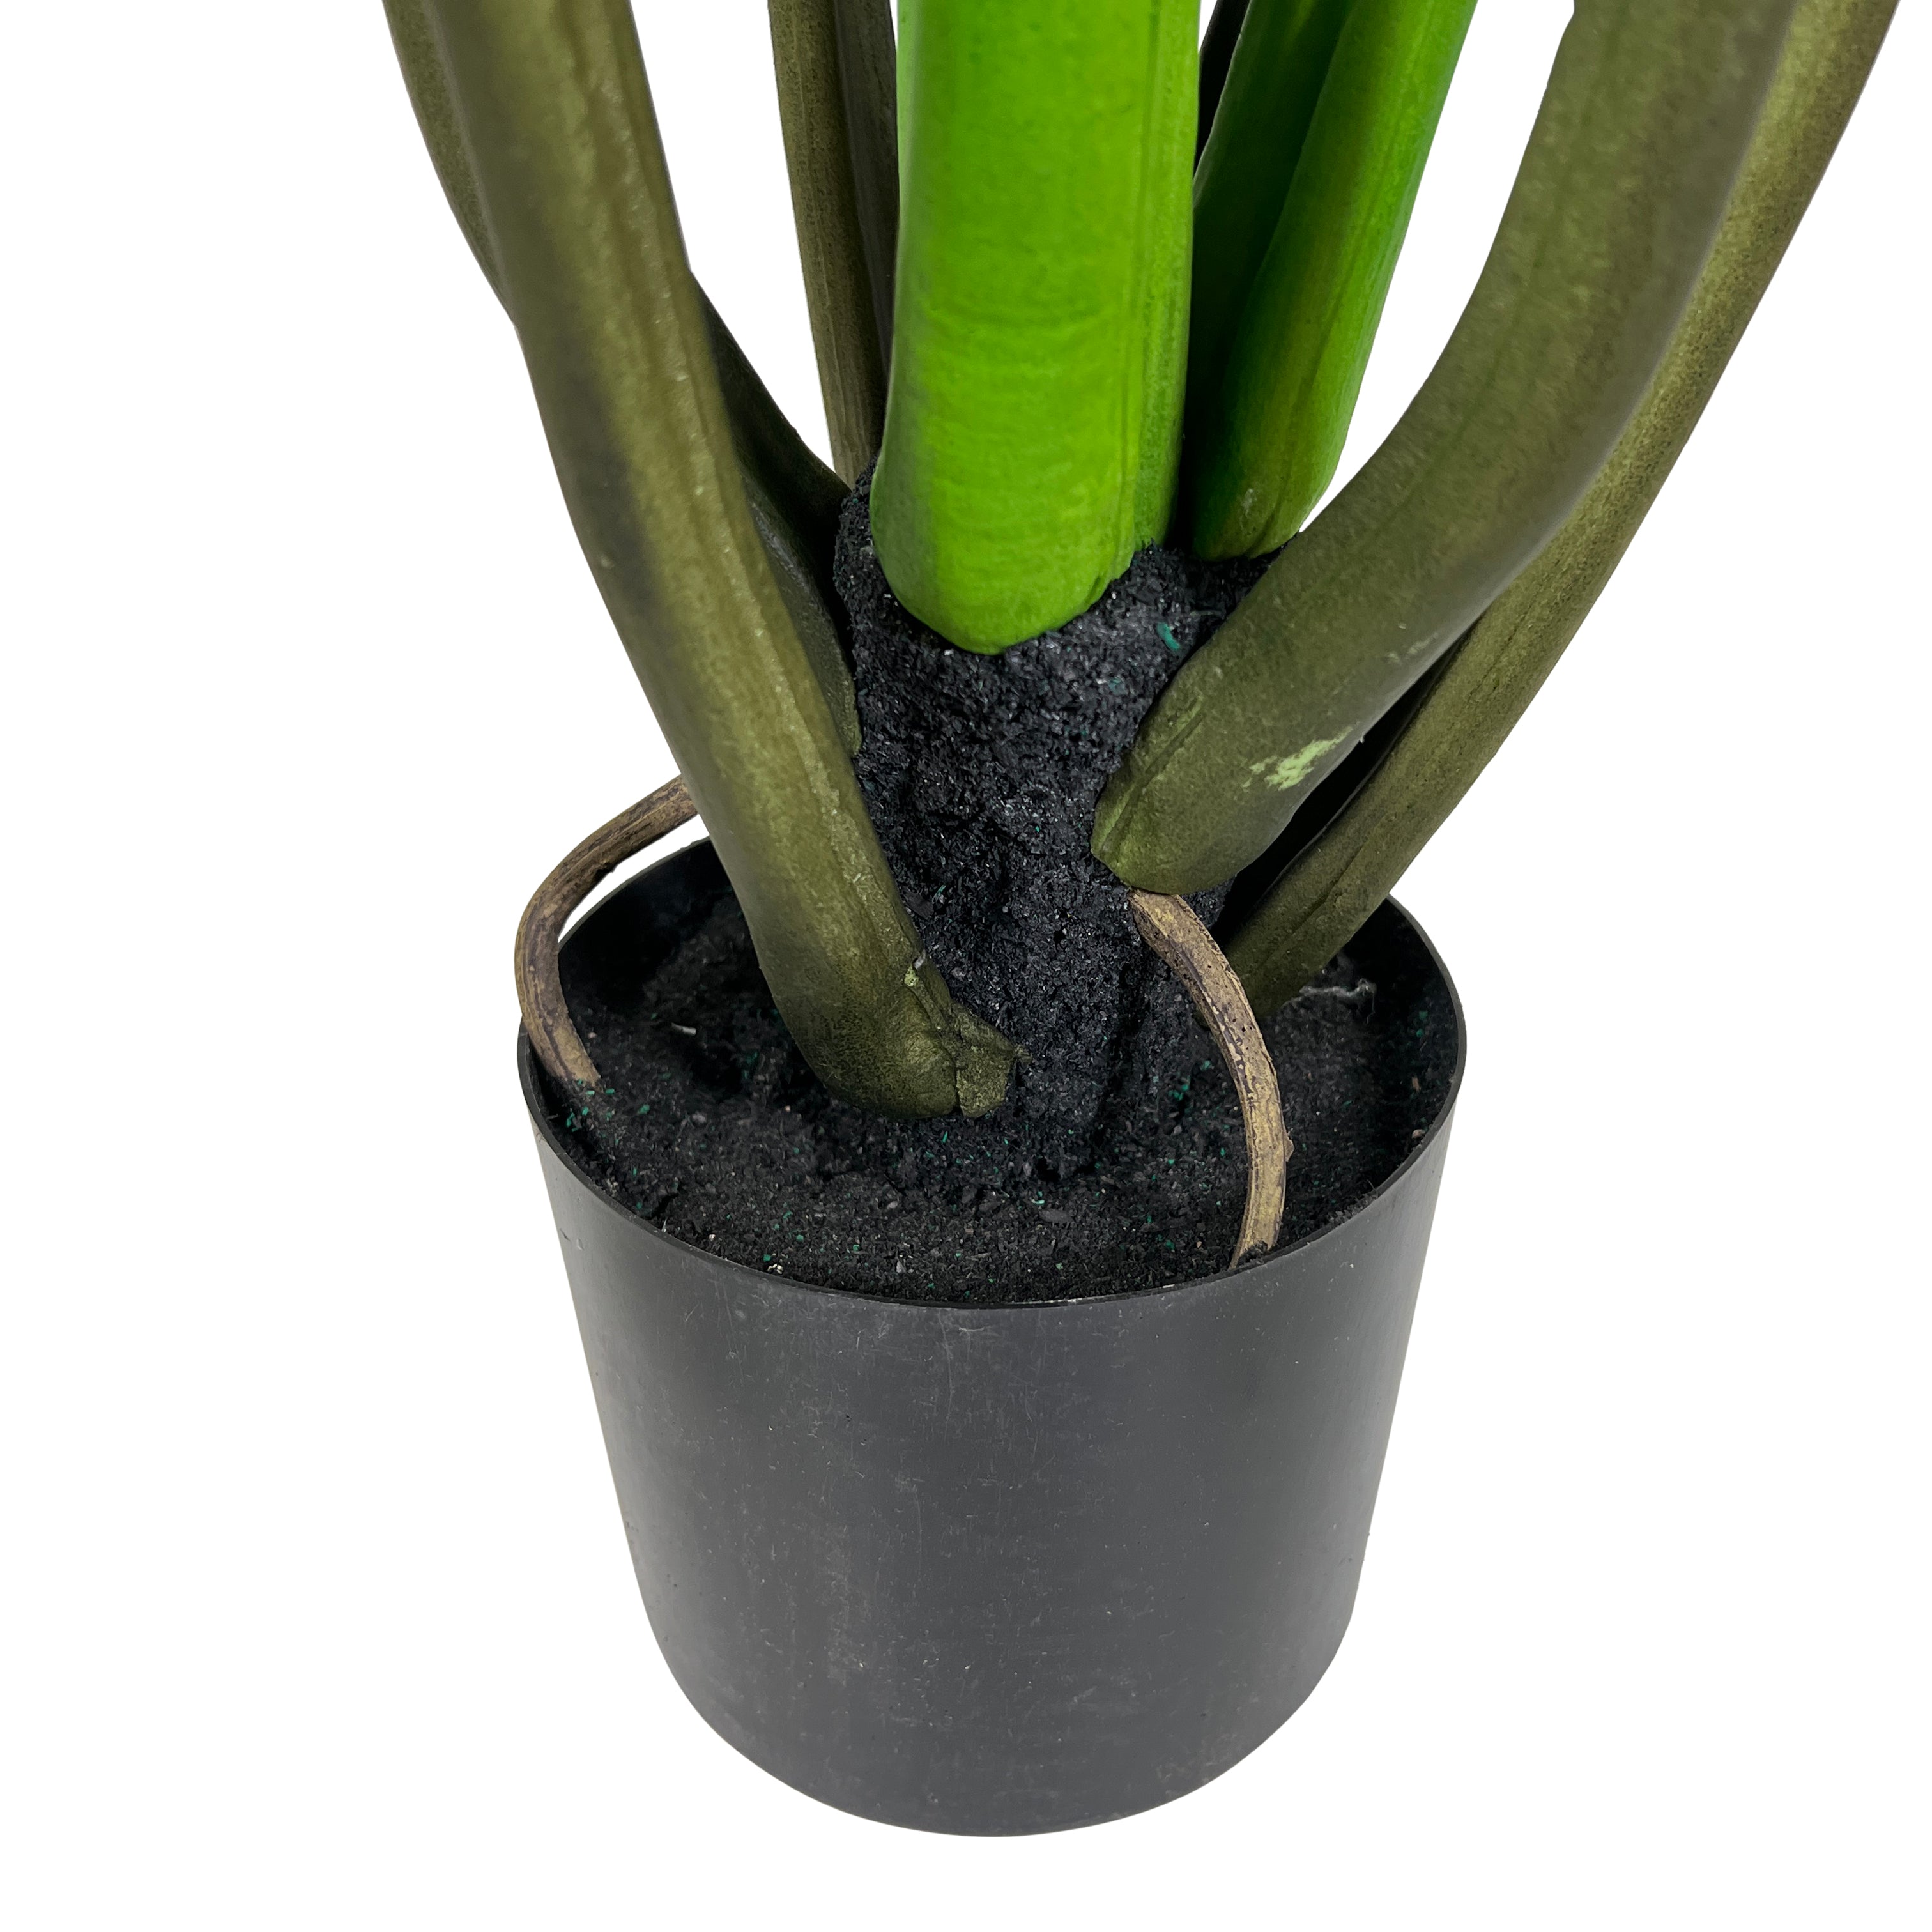 Kopu® Künstlicher Philodendron 110 cm - 9 Blätter - im schwarzen Topf